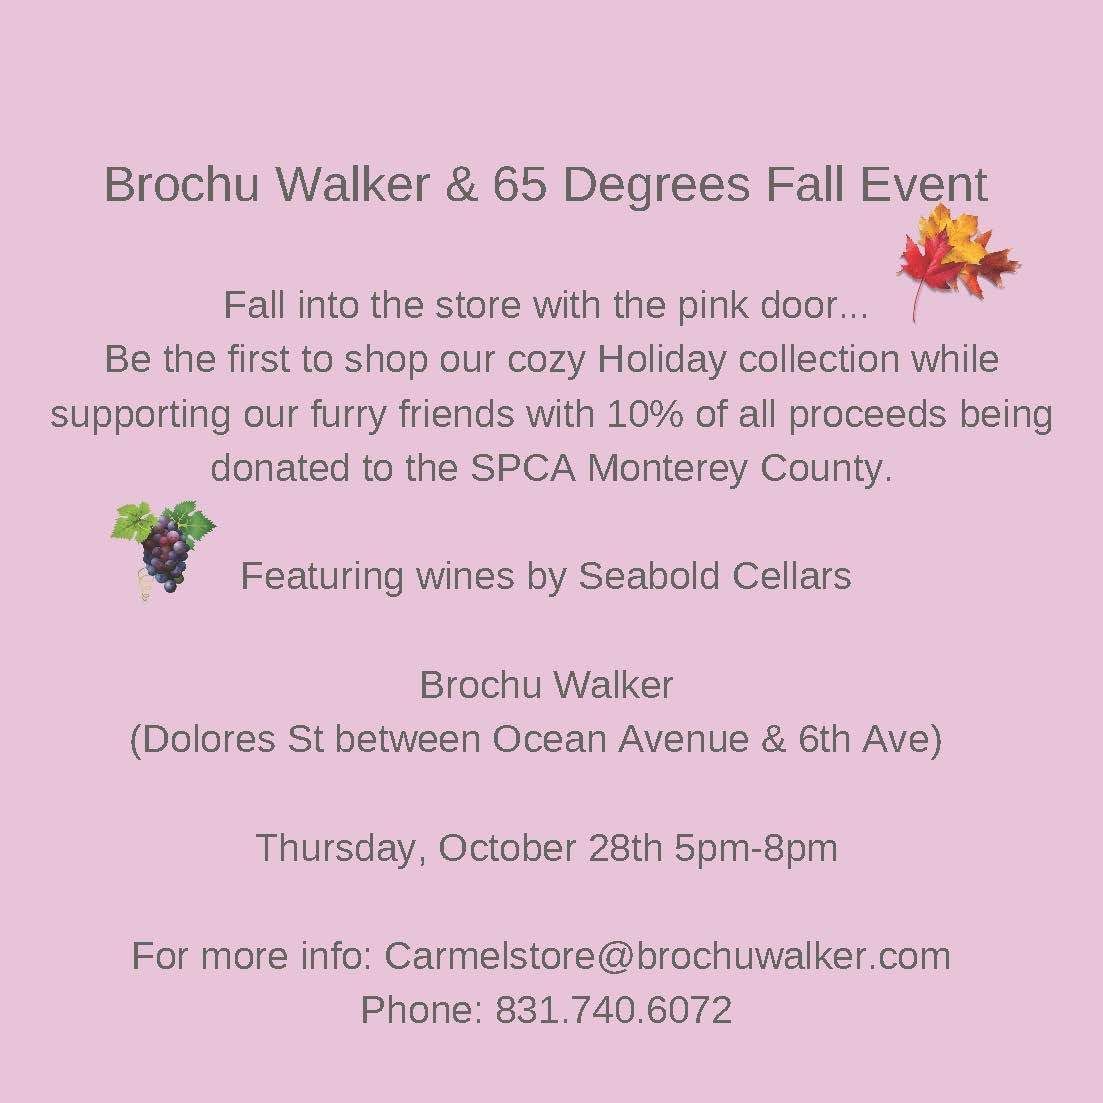 Brochu Walker & 65 Degrees Fall event